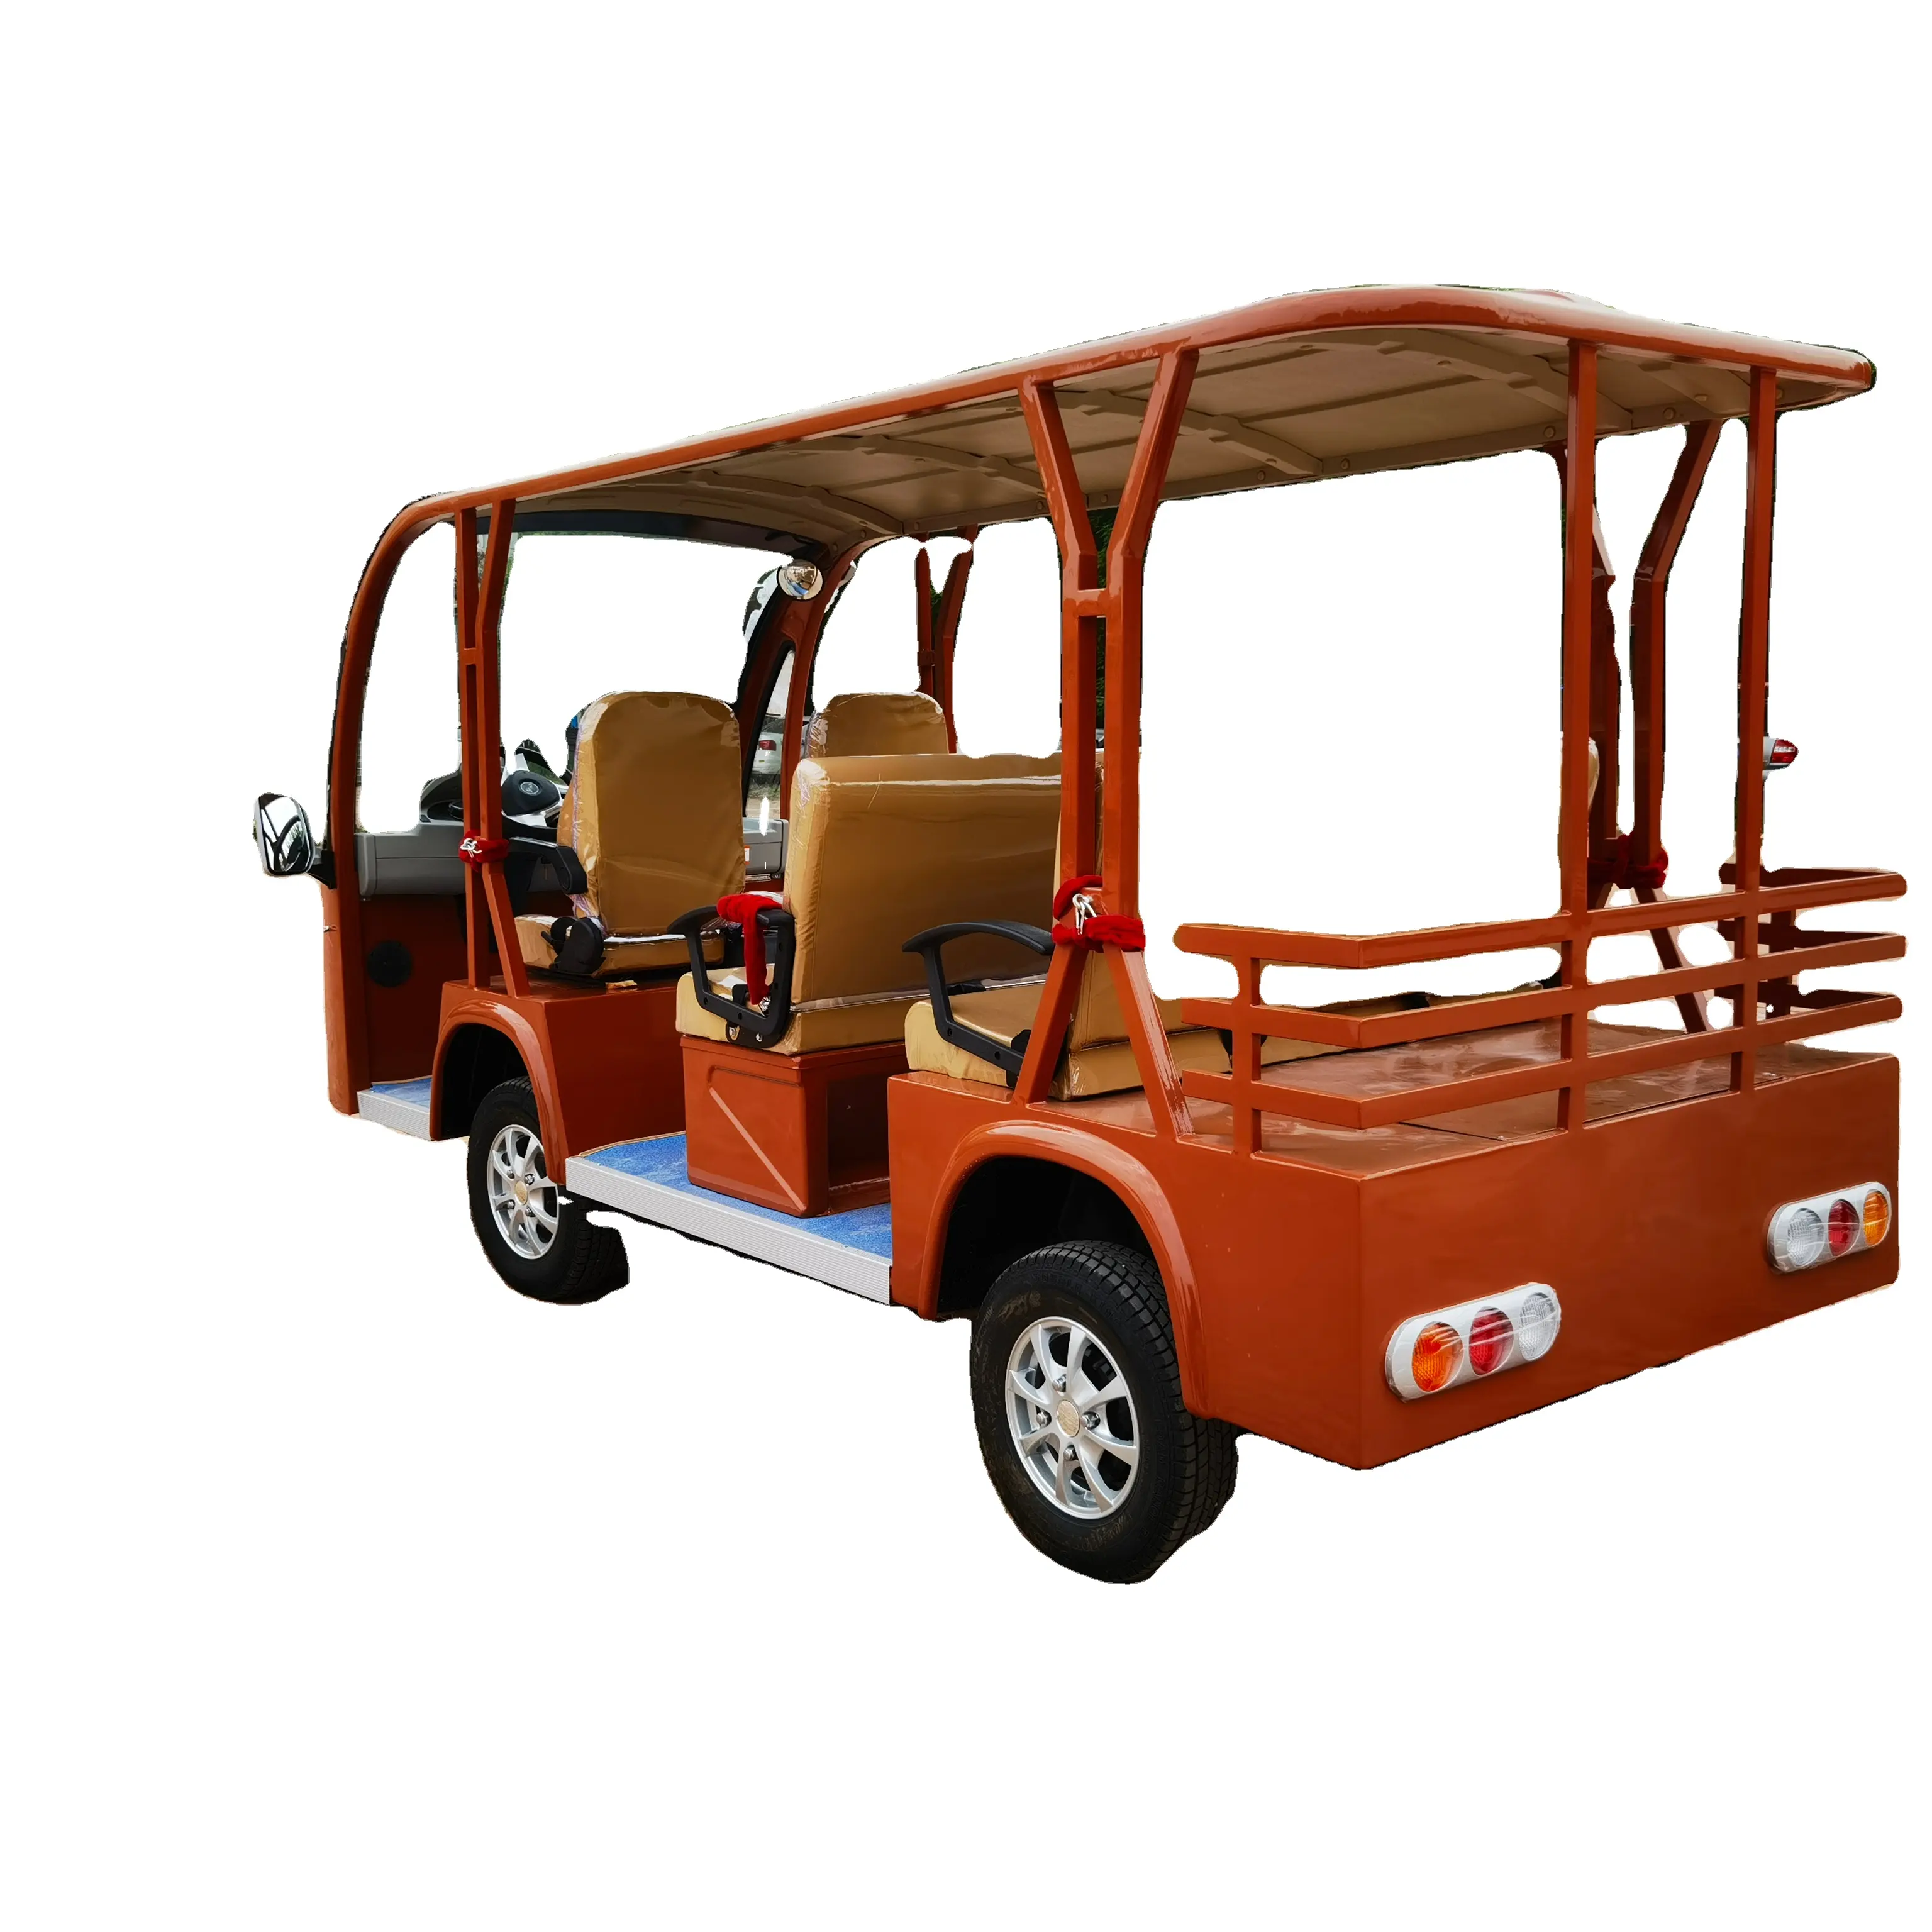 बिक्री के लिए टोंग कै बैटरी चालित पर्यटक क्लासिक बस इलेक्ट्रिक लो स्पीड शटल बस इलेक्ट्रिक दर्शनीय स्थलों की यात्रा बस कार